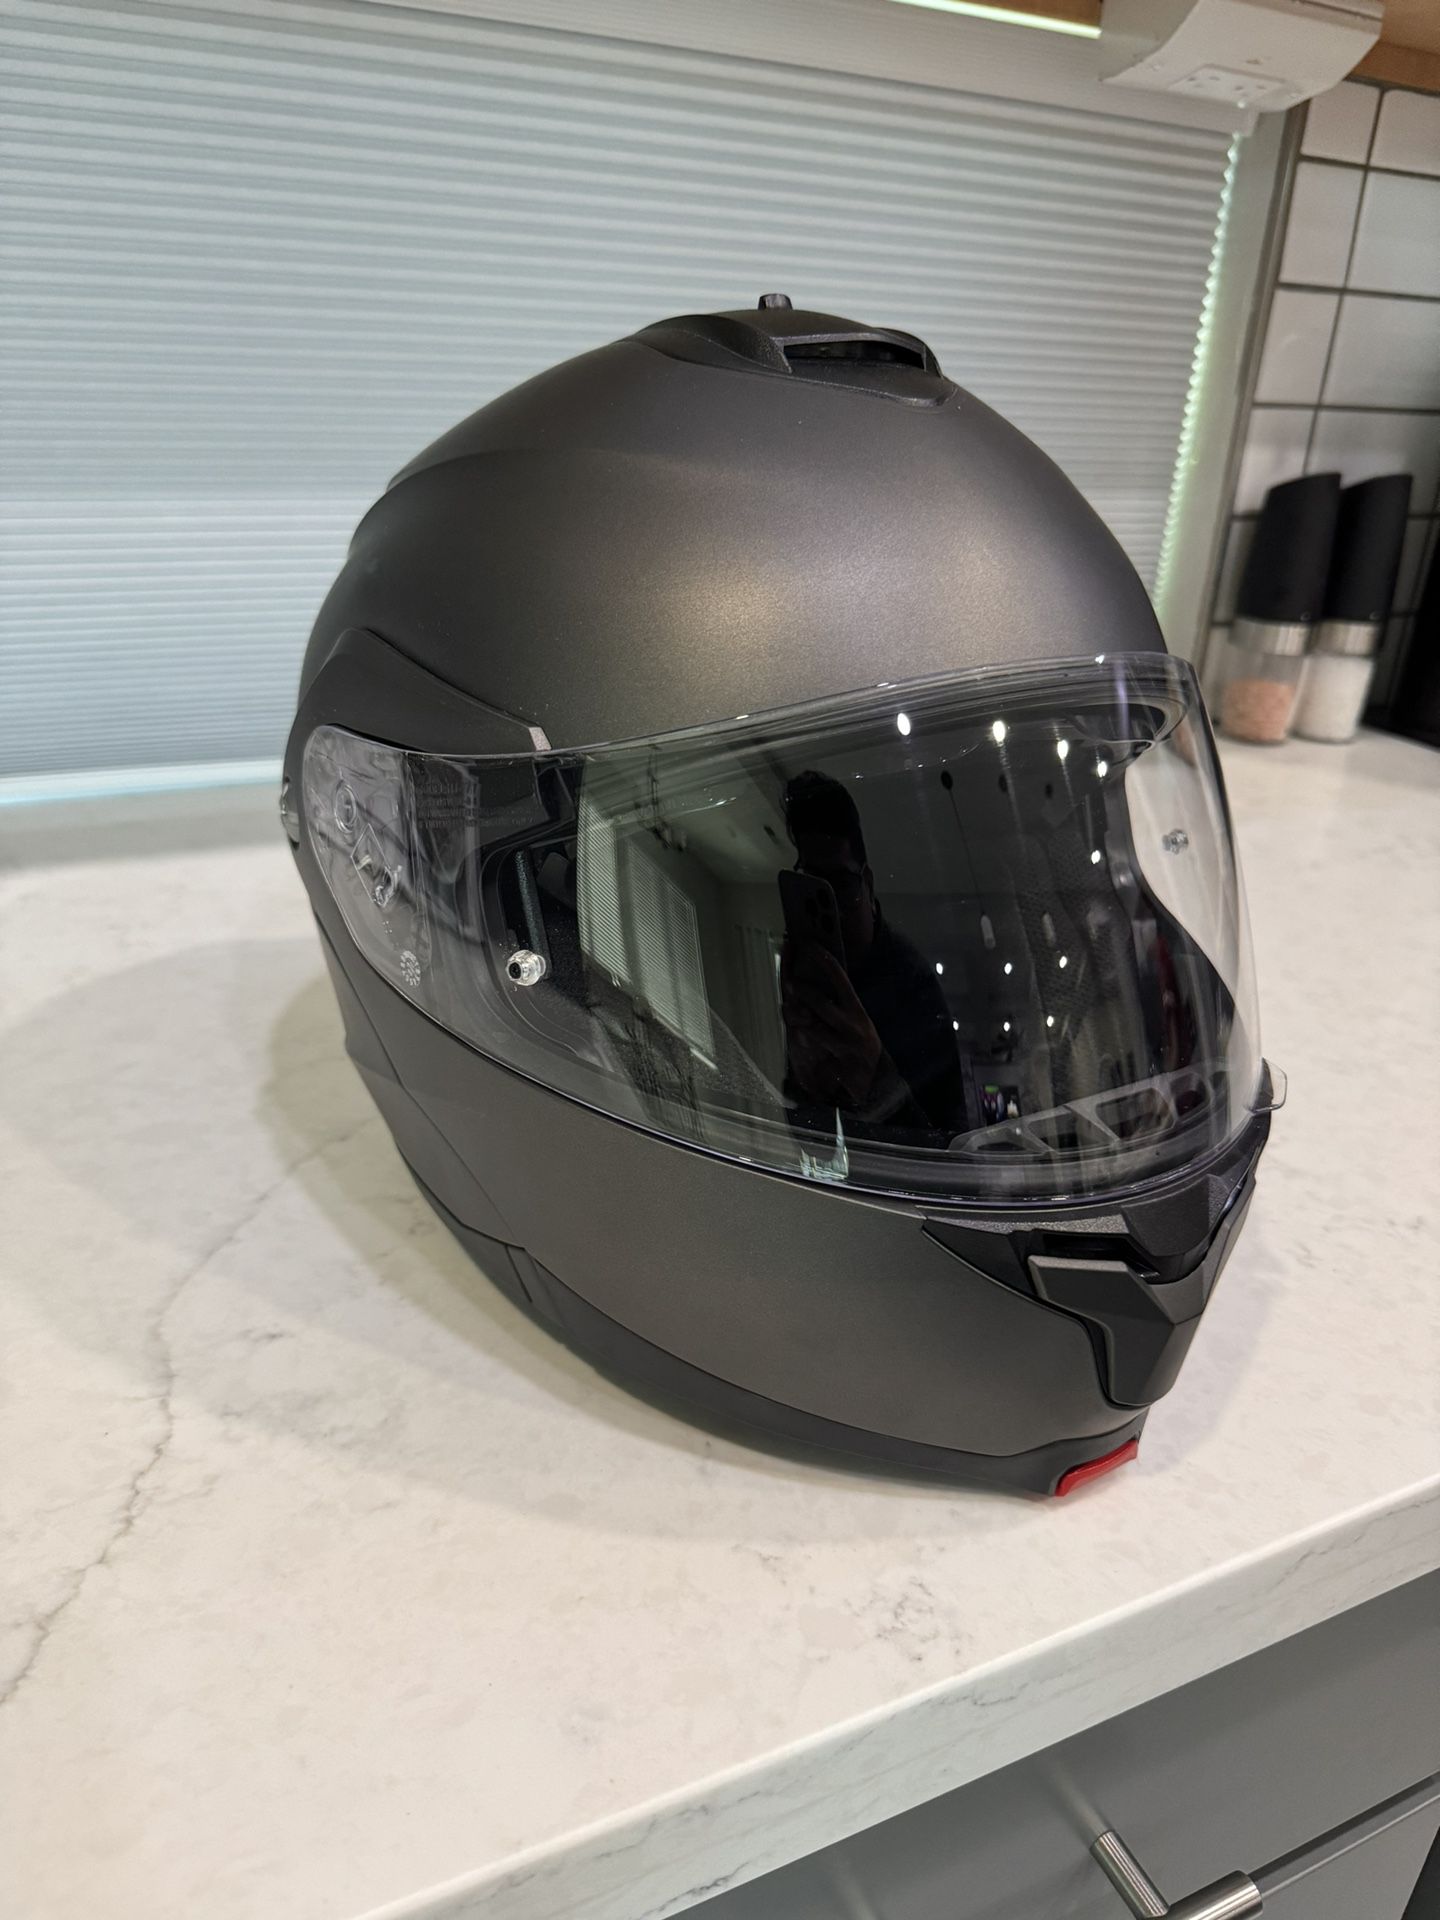 Motorcycle Helmet Medium 